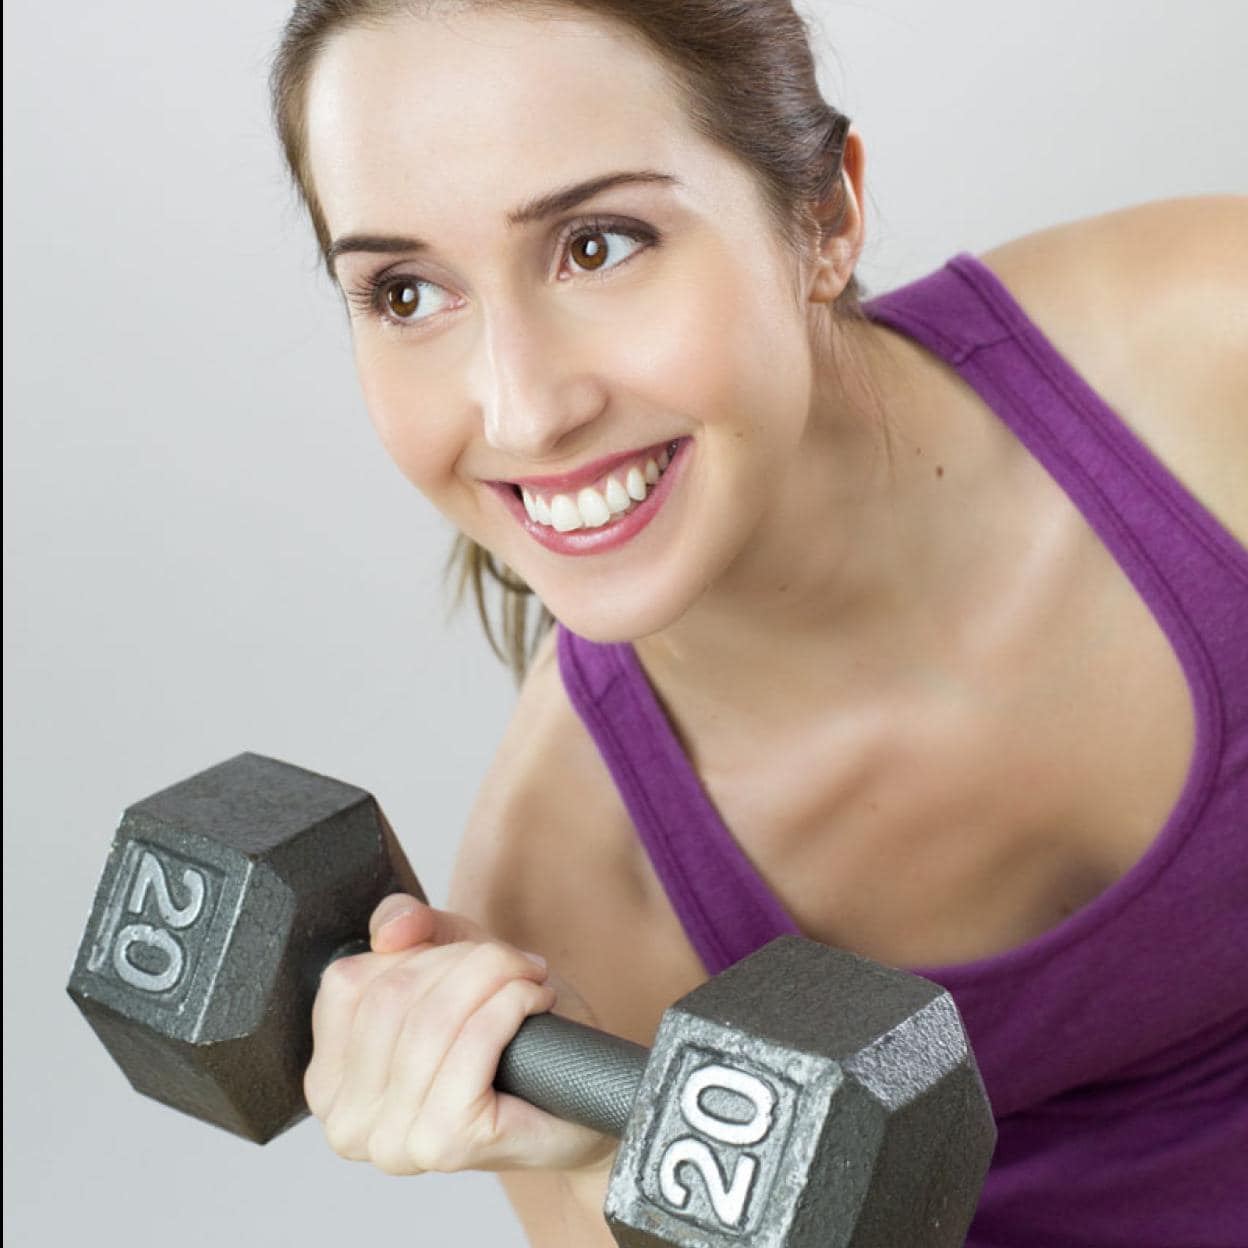 Ejercicio con pesas: una guía práctica para principiantes según edad y  forma física